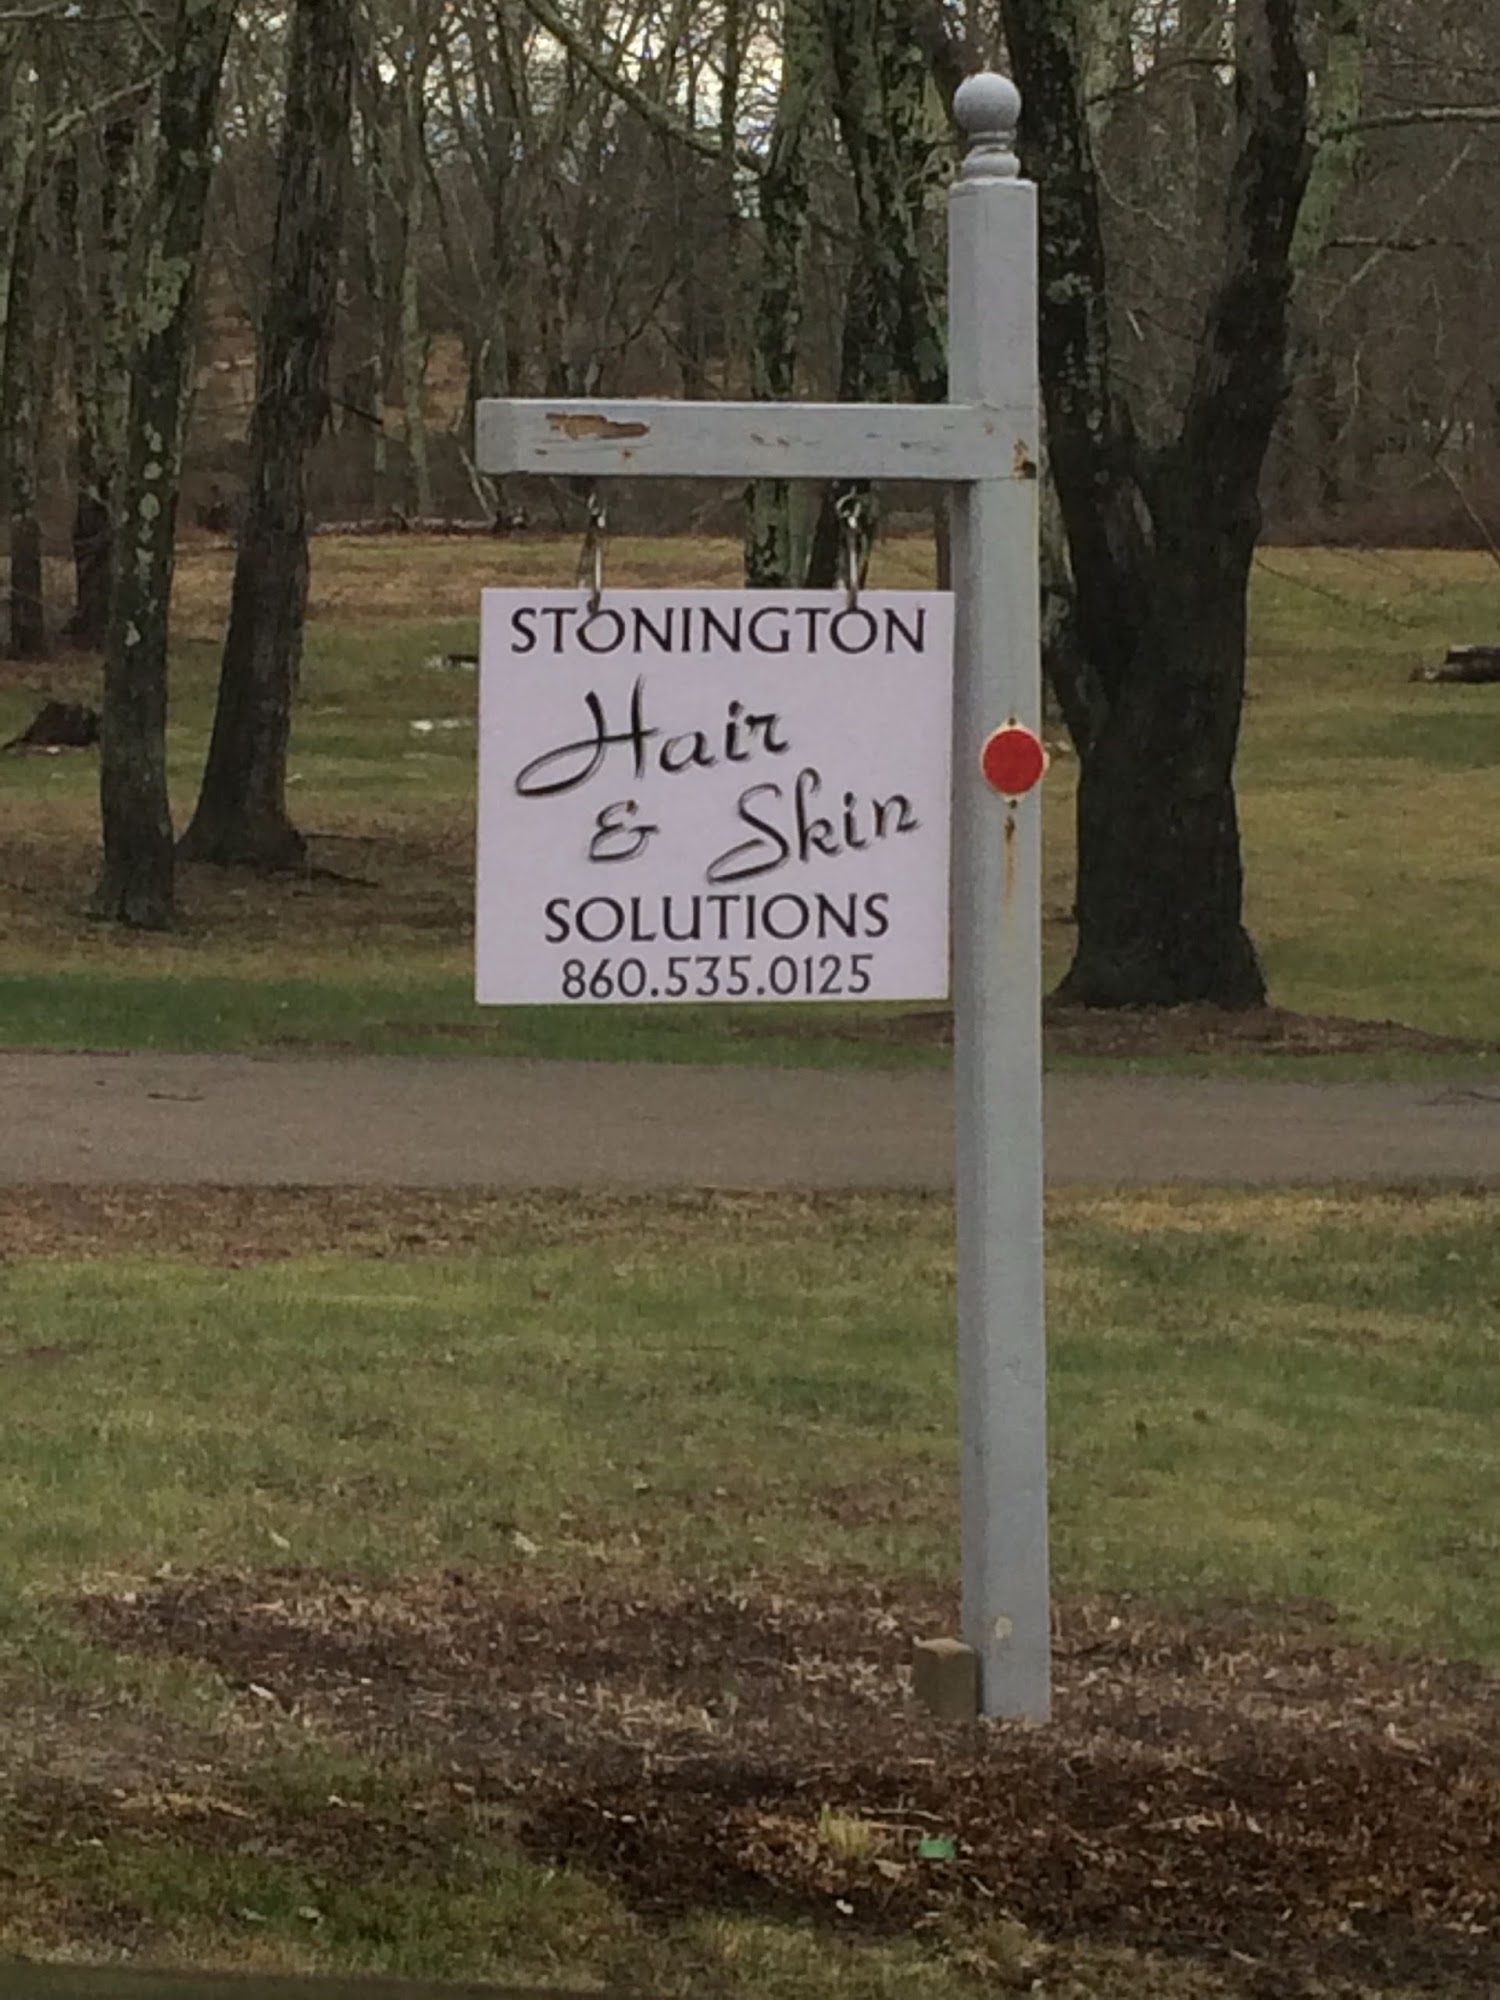 Stonington Hair & Skin Solutions